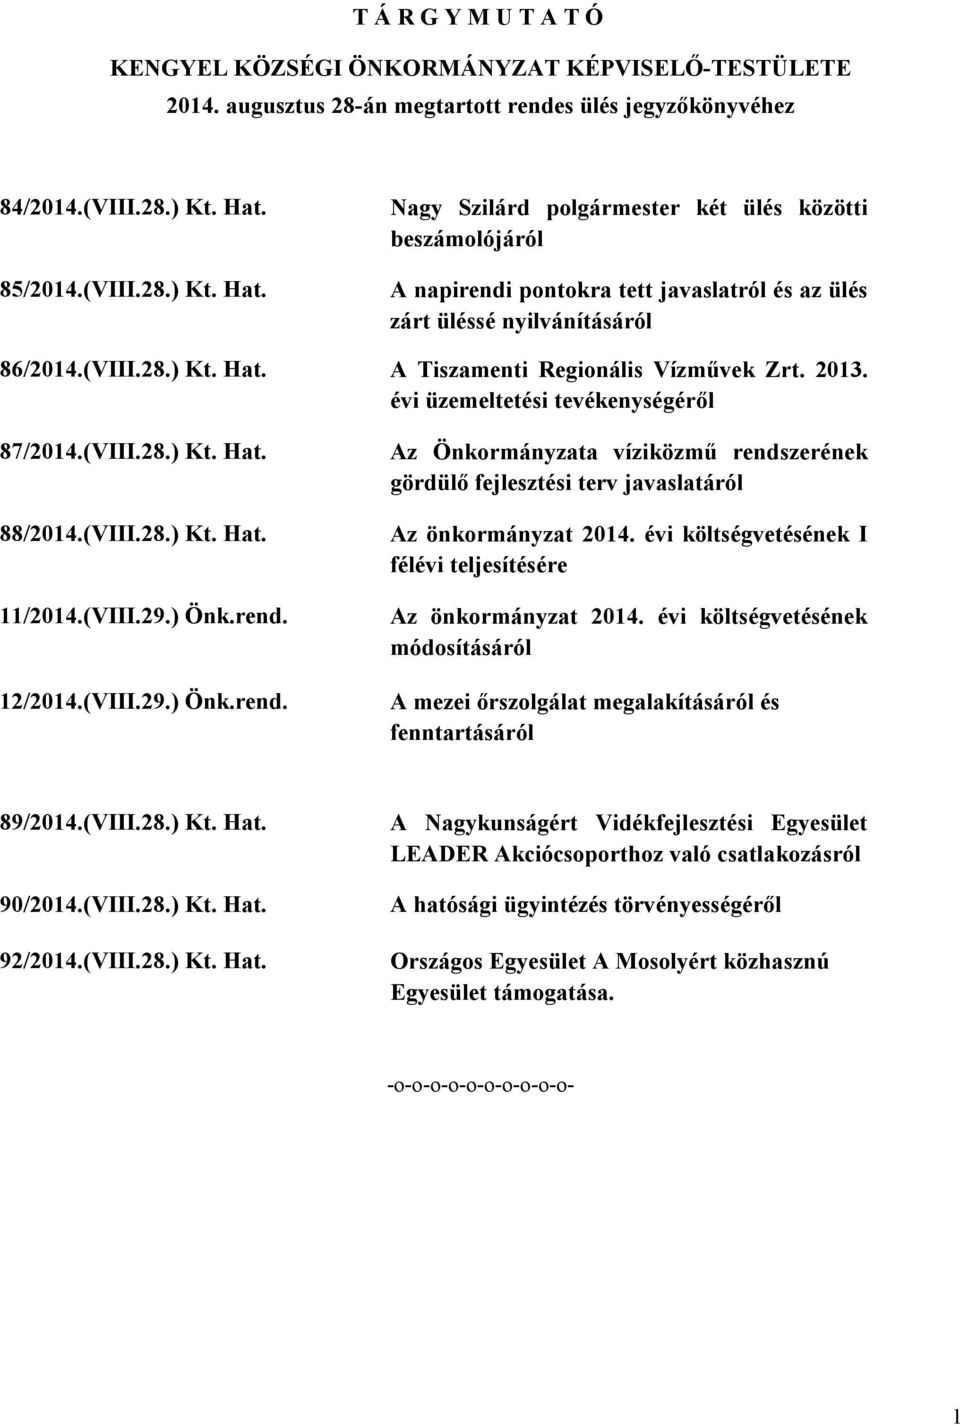 2013. évi üzemeltetési tevékenységéről 87/2014.(VIII.28.) Kt. Hat. 88/2014.(VIII.28.) Kt. Hat. 11/2014.(VIII.29.) Önk.rend.